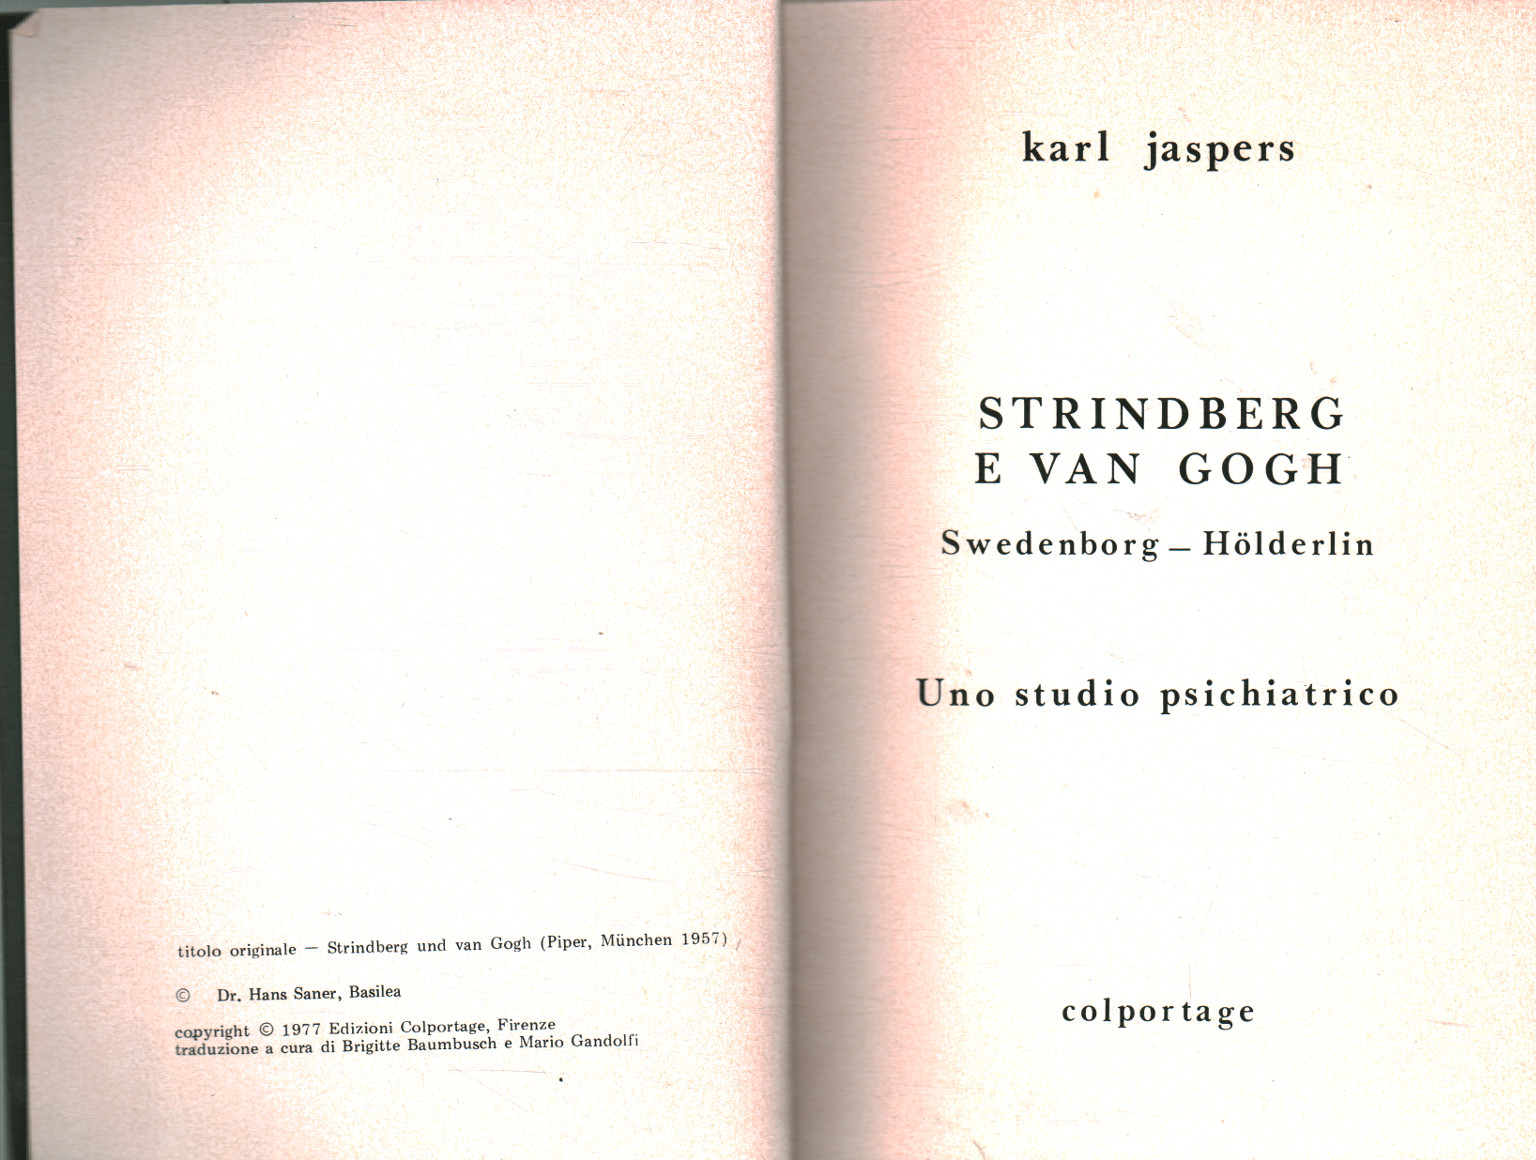 Strindberg y Van Gogh, Karl Jaspers